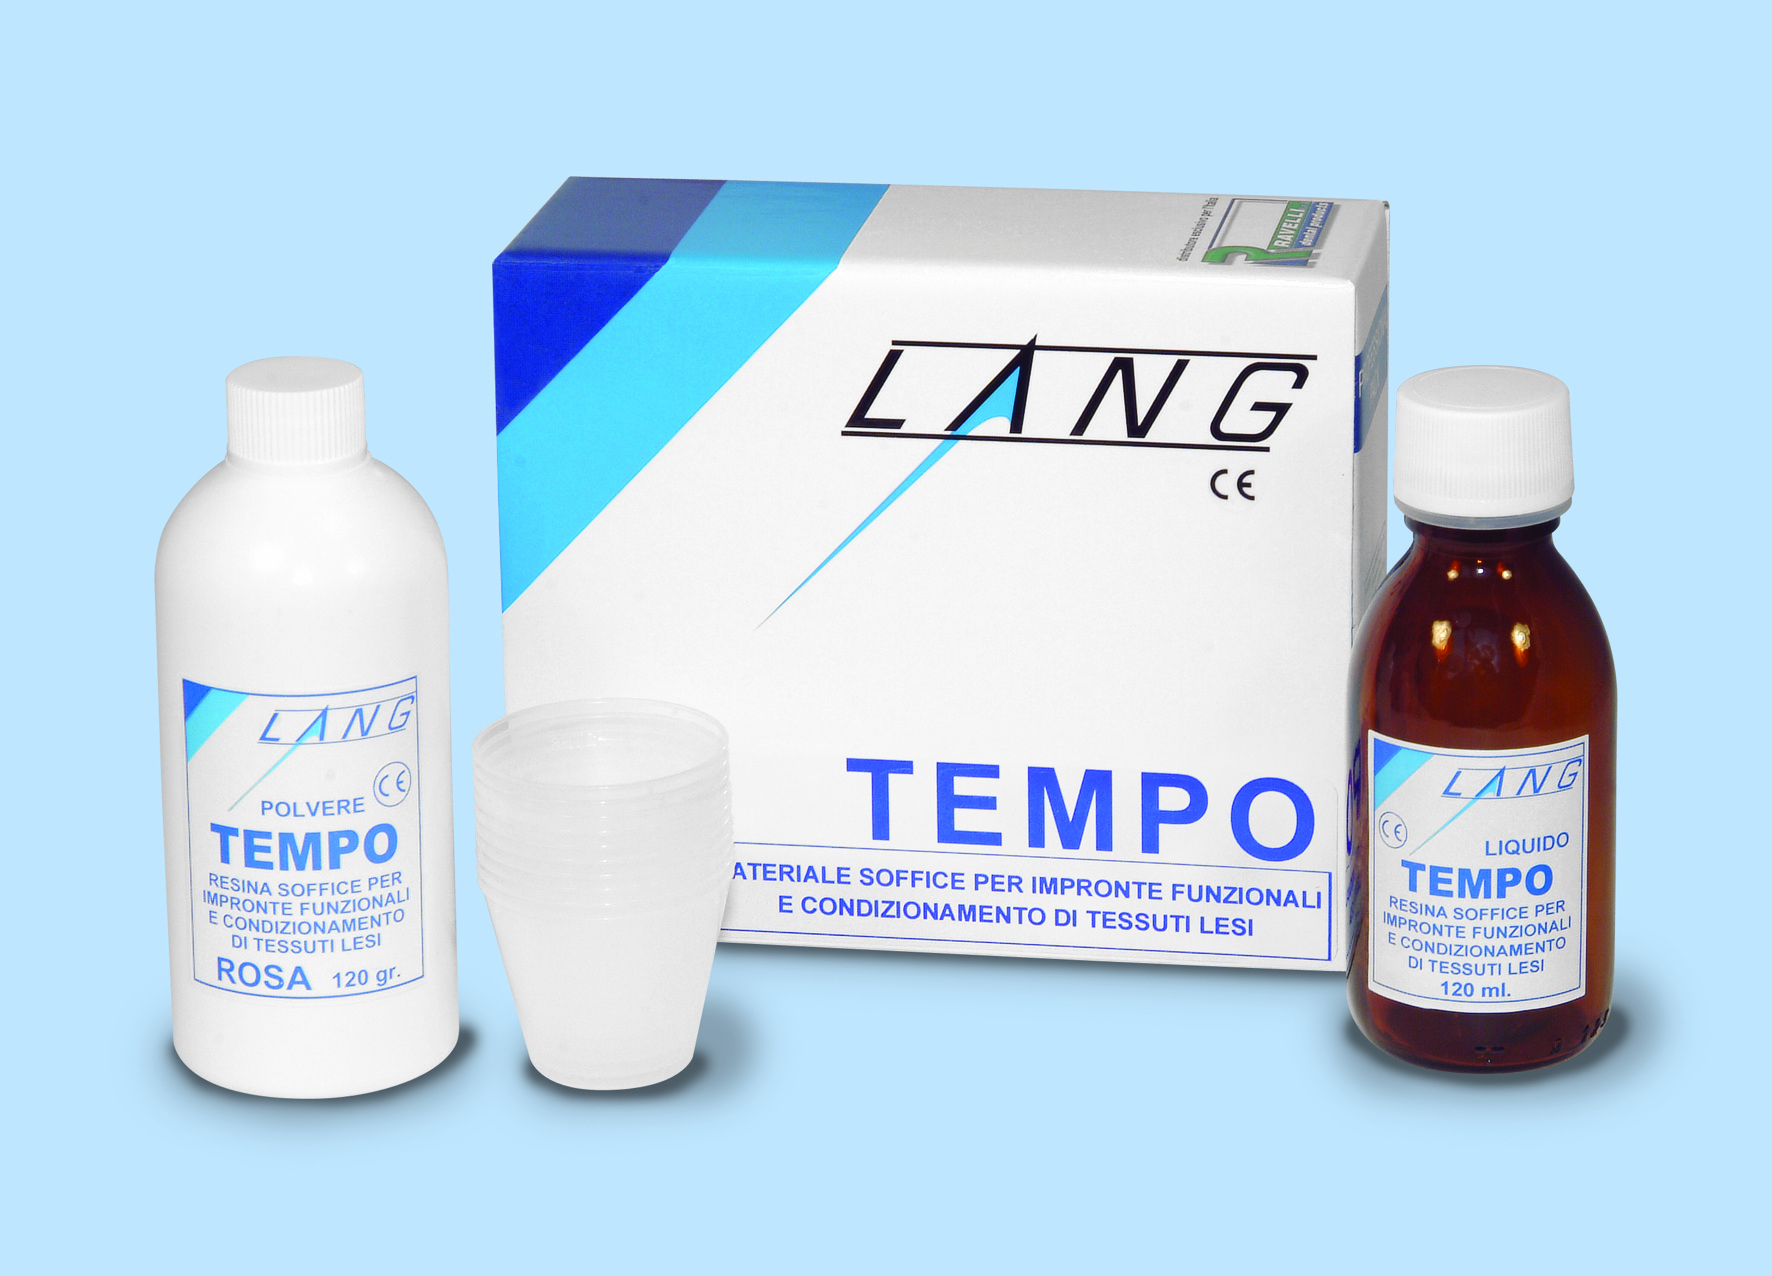 Array - Tempo Lang Kit